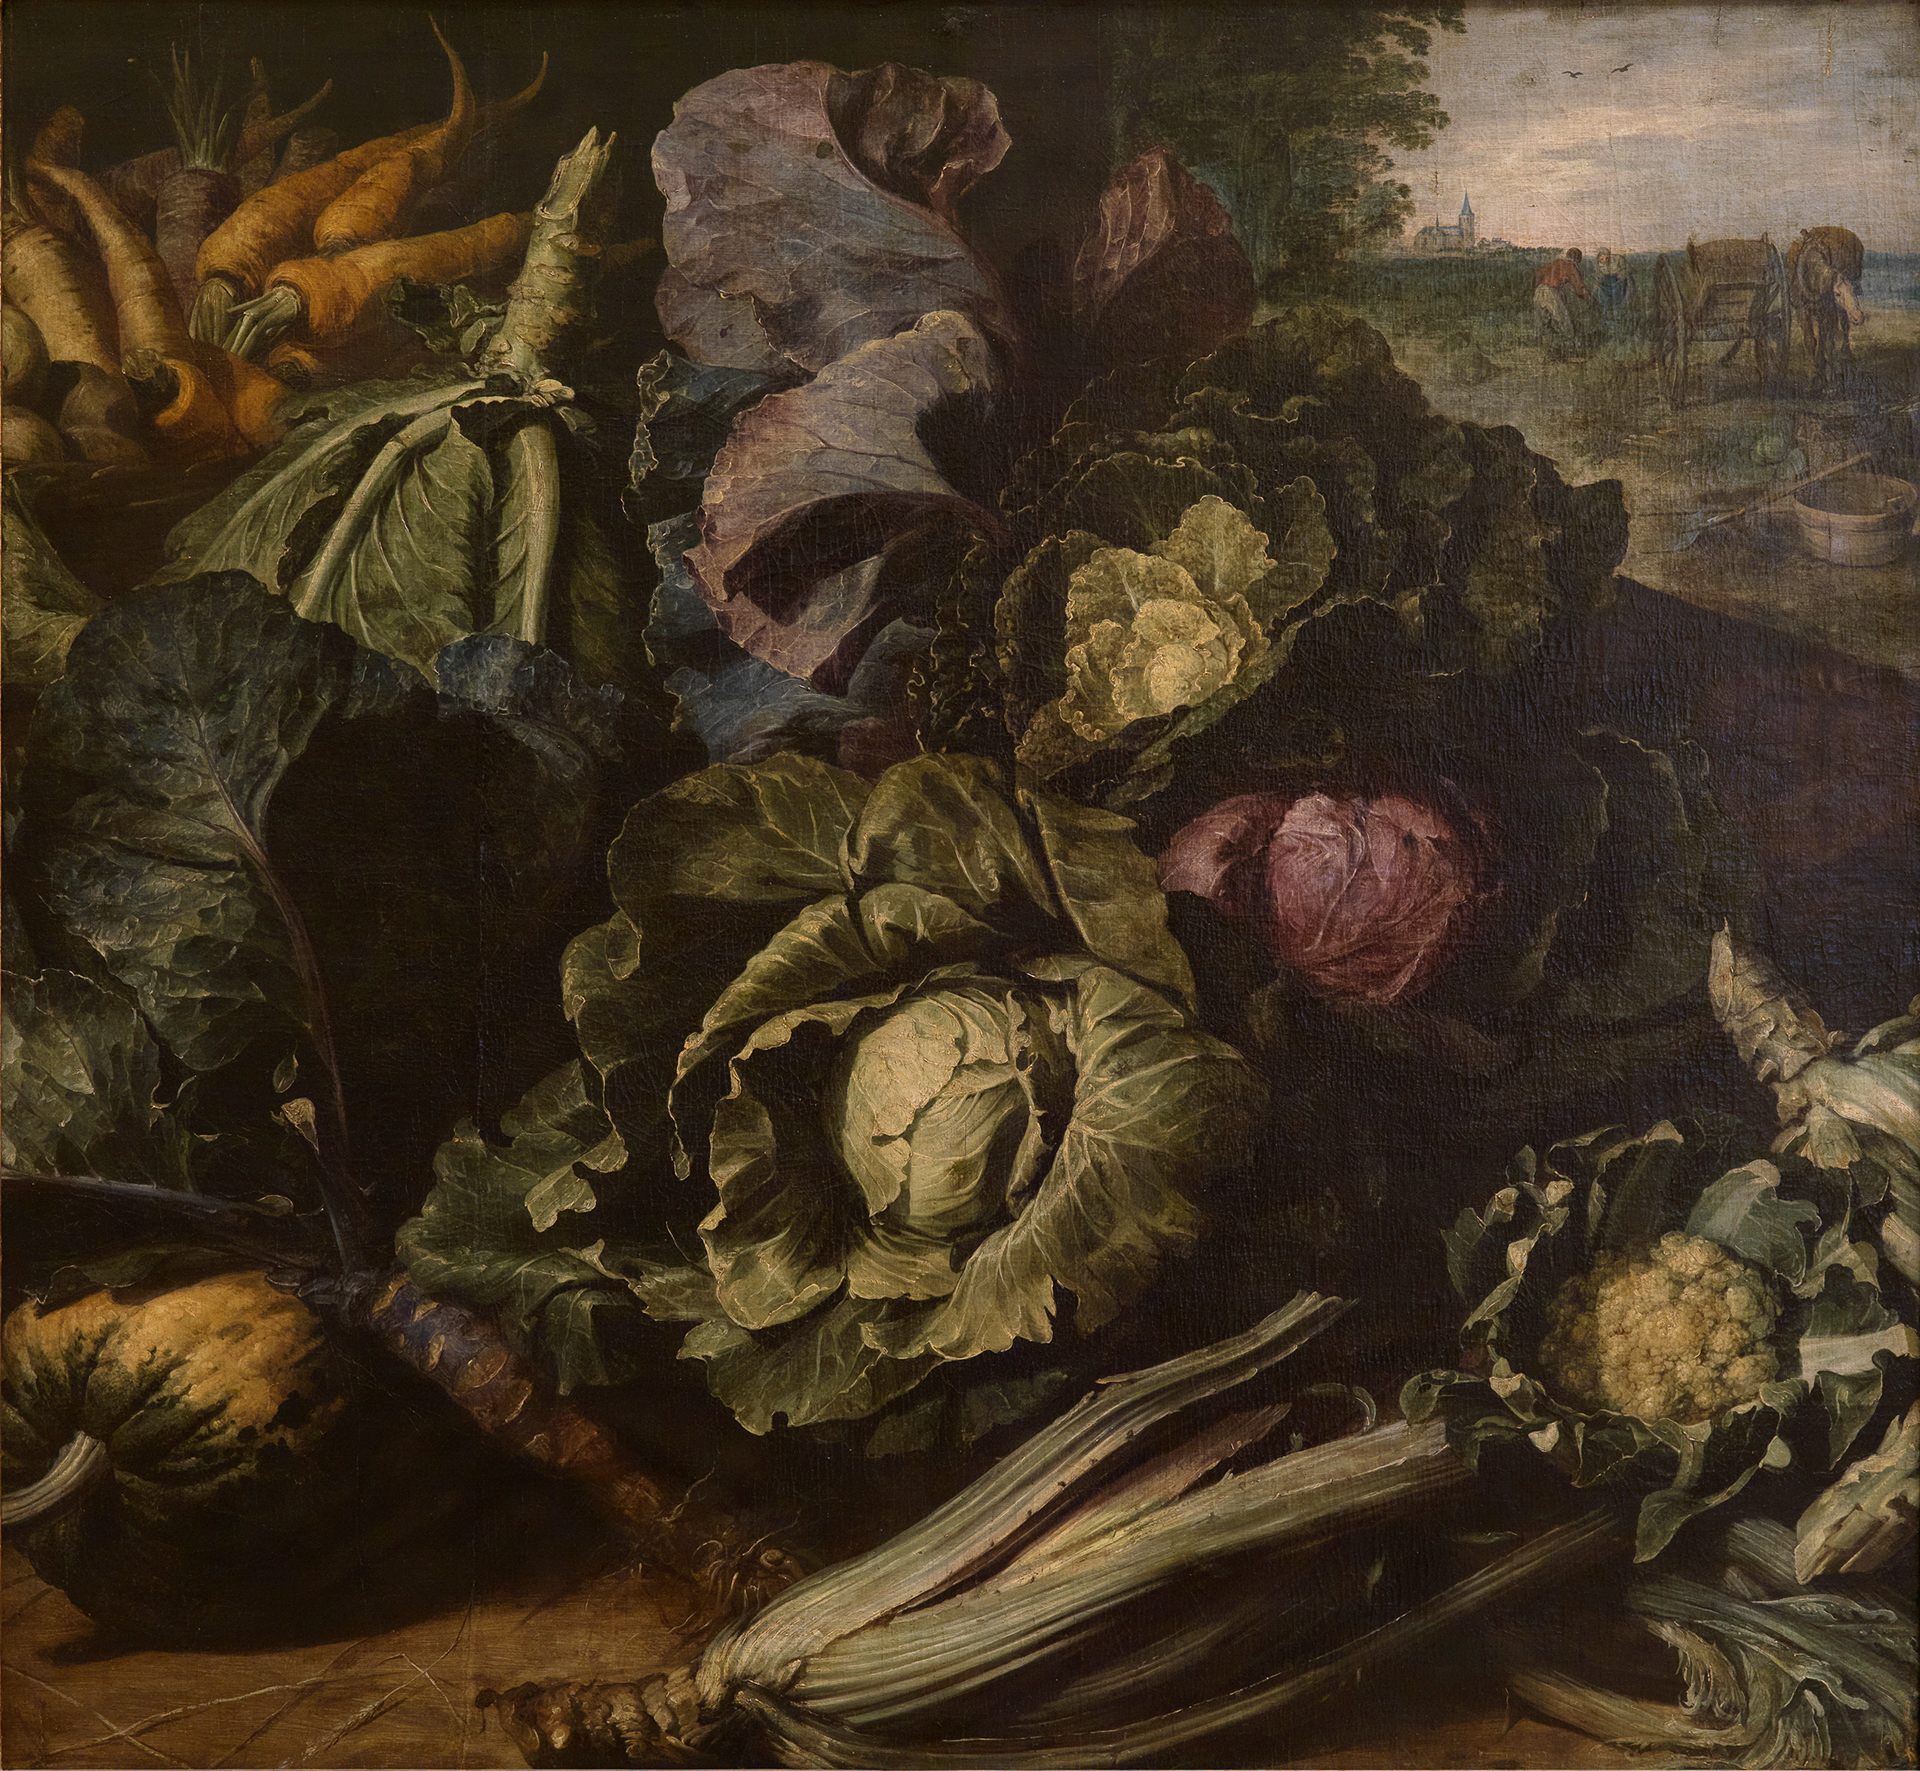 Eine beinahe quadratisches Gemälde zeigt im Stile altniederländischer Stillleben verschiedene Kohl- und Rübensorten, im Hintergrund ist Land zu sehen.